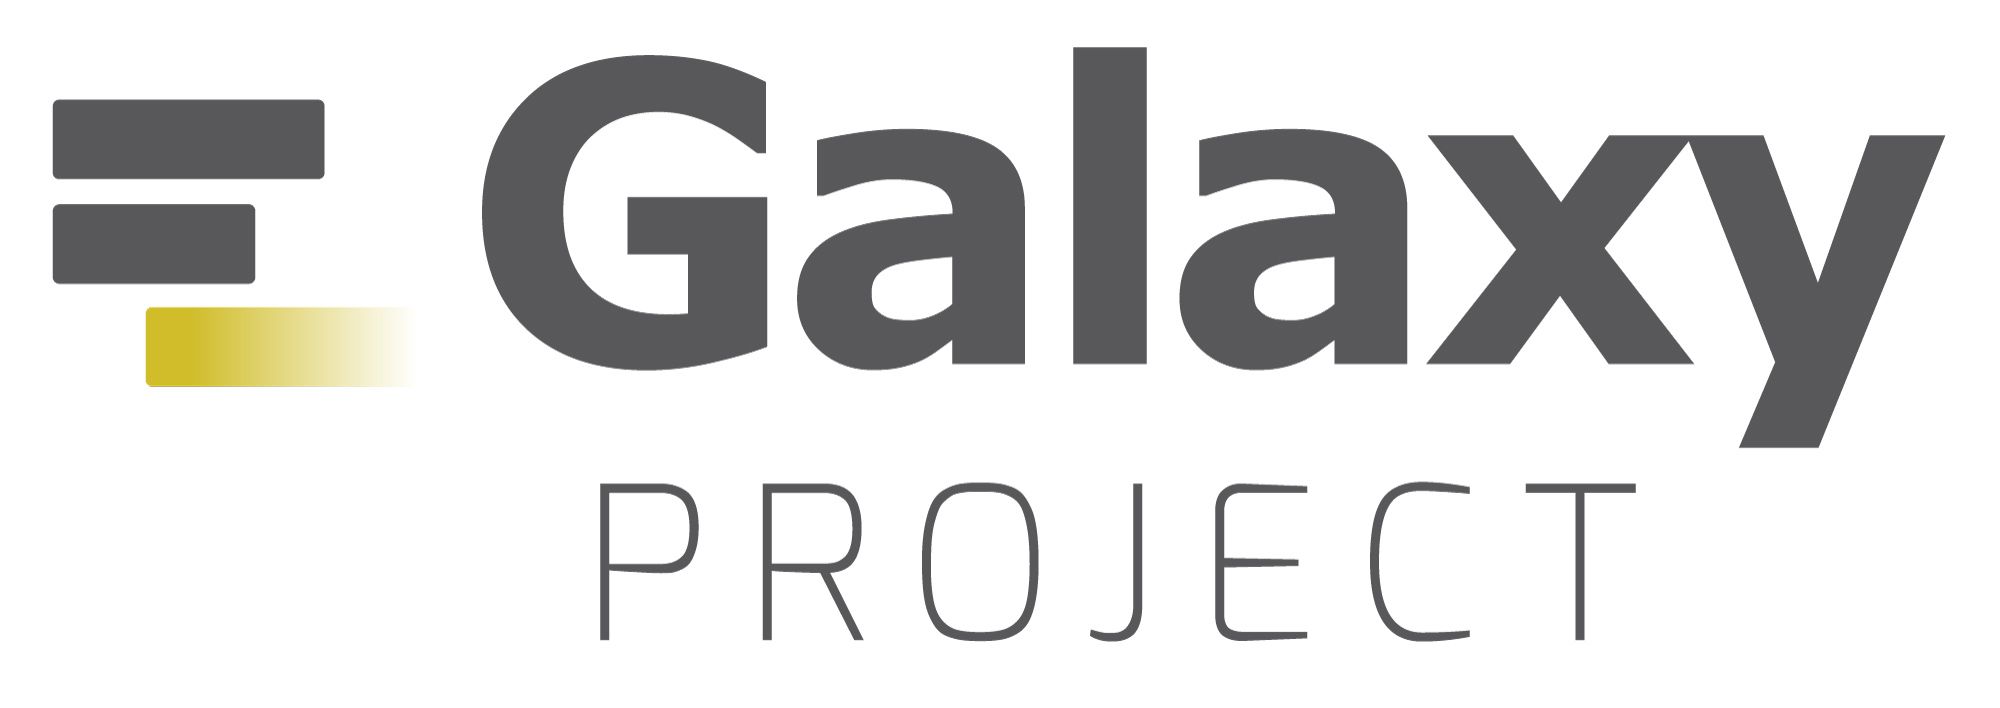 Galaxy Logo